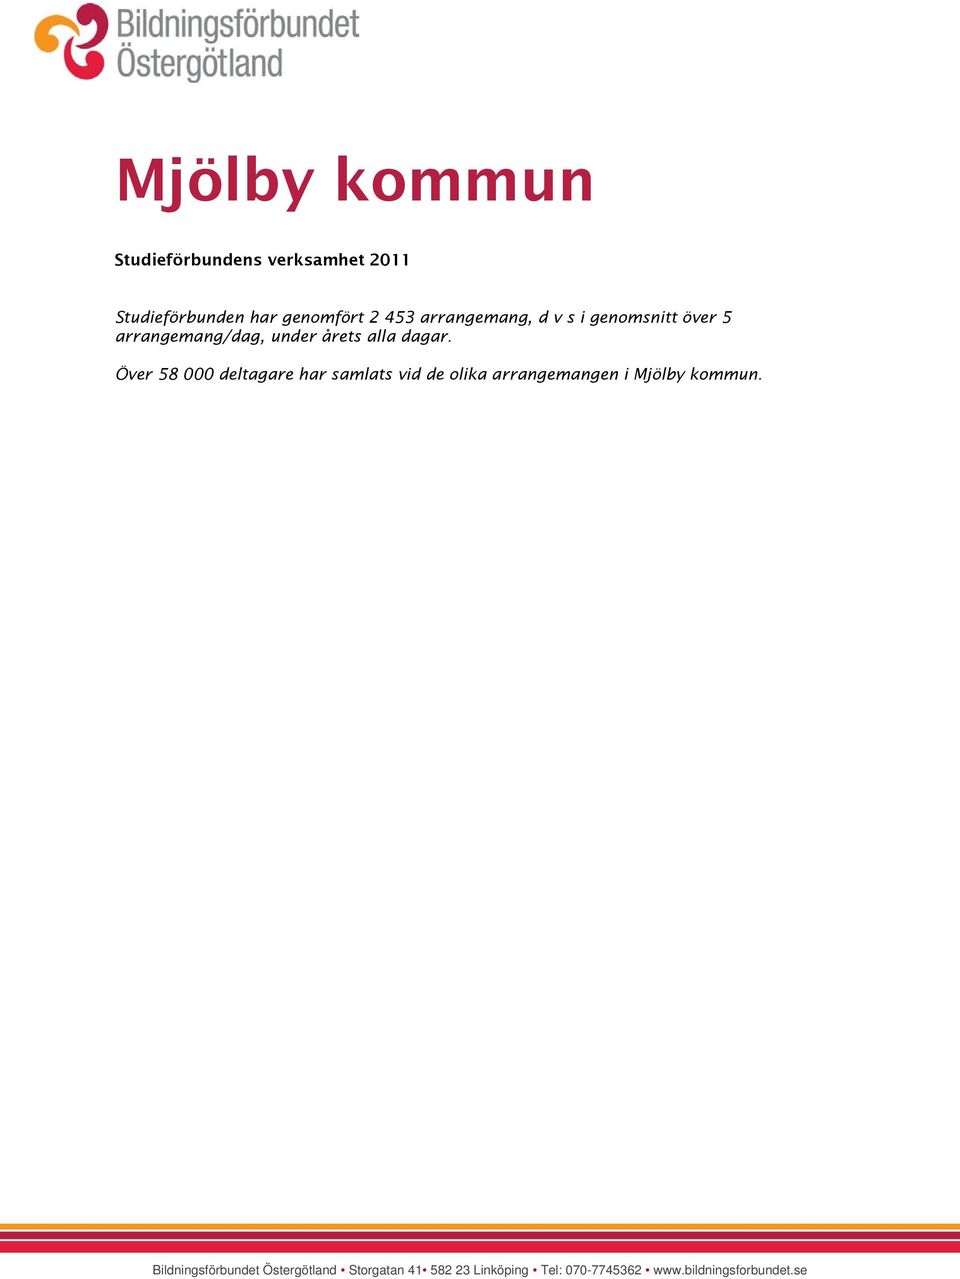 Över 58 000 deltagare har samlats vid de olika arrangemangen i Mjölby kommun.